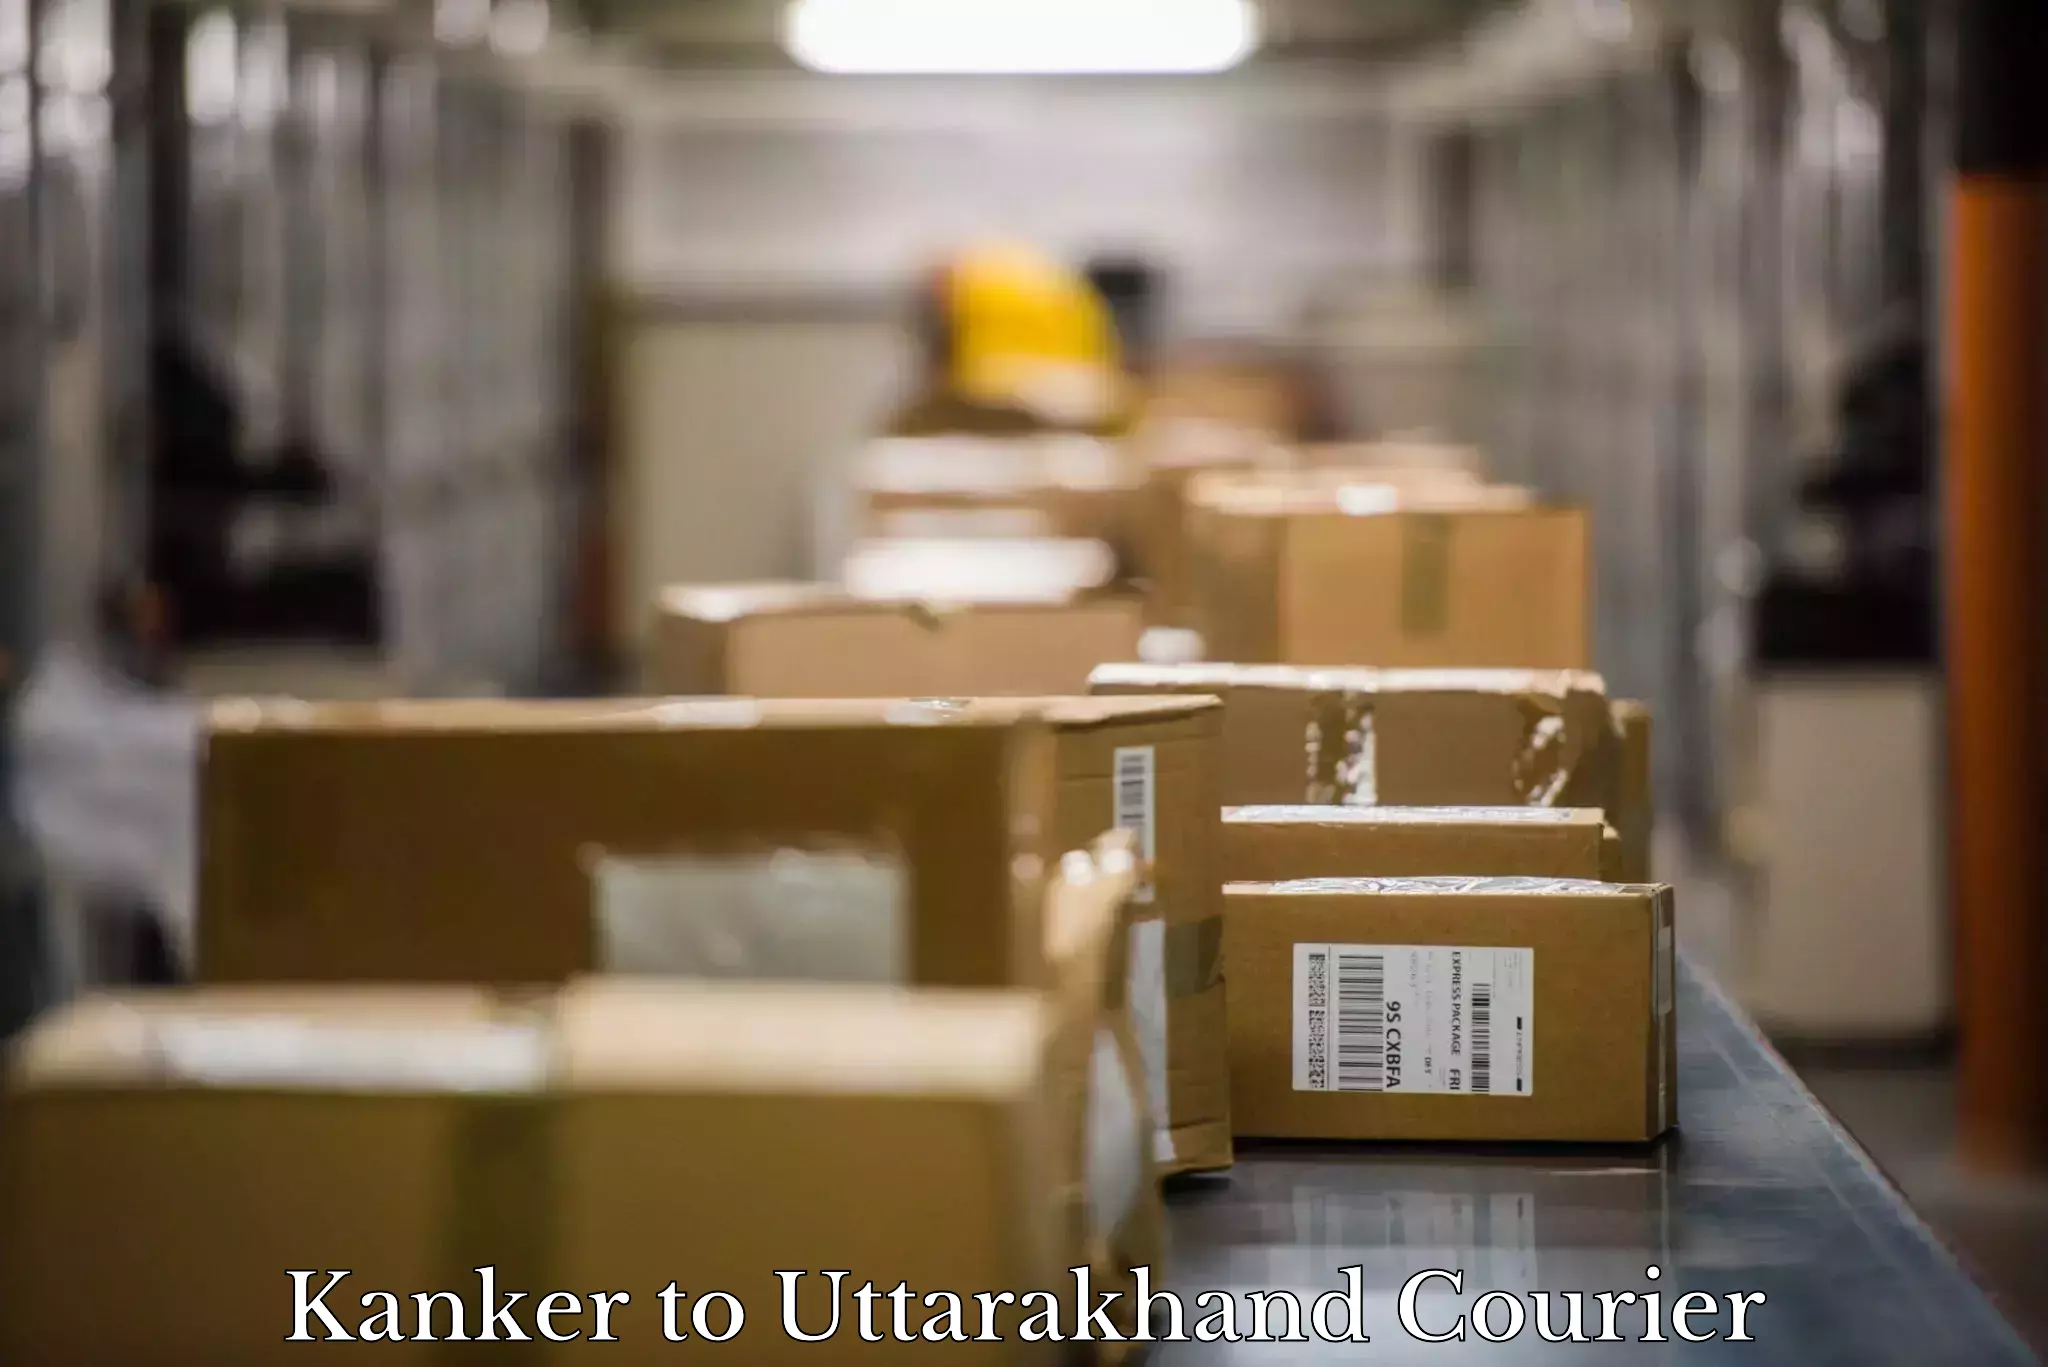 Household goods transport in Kanker to Uttarakhand